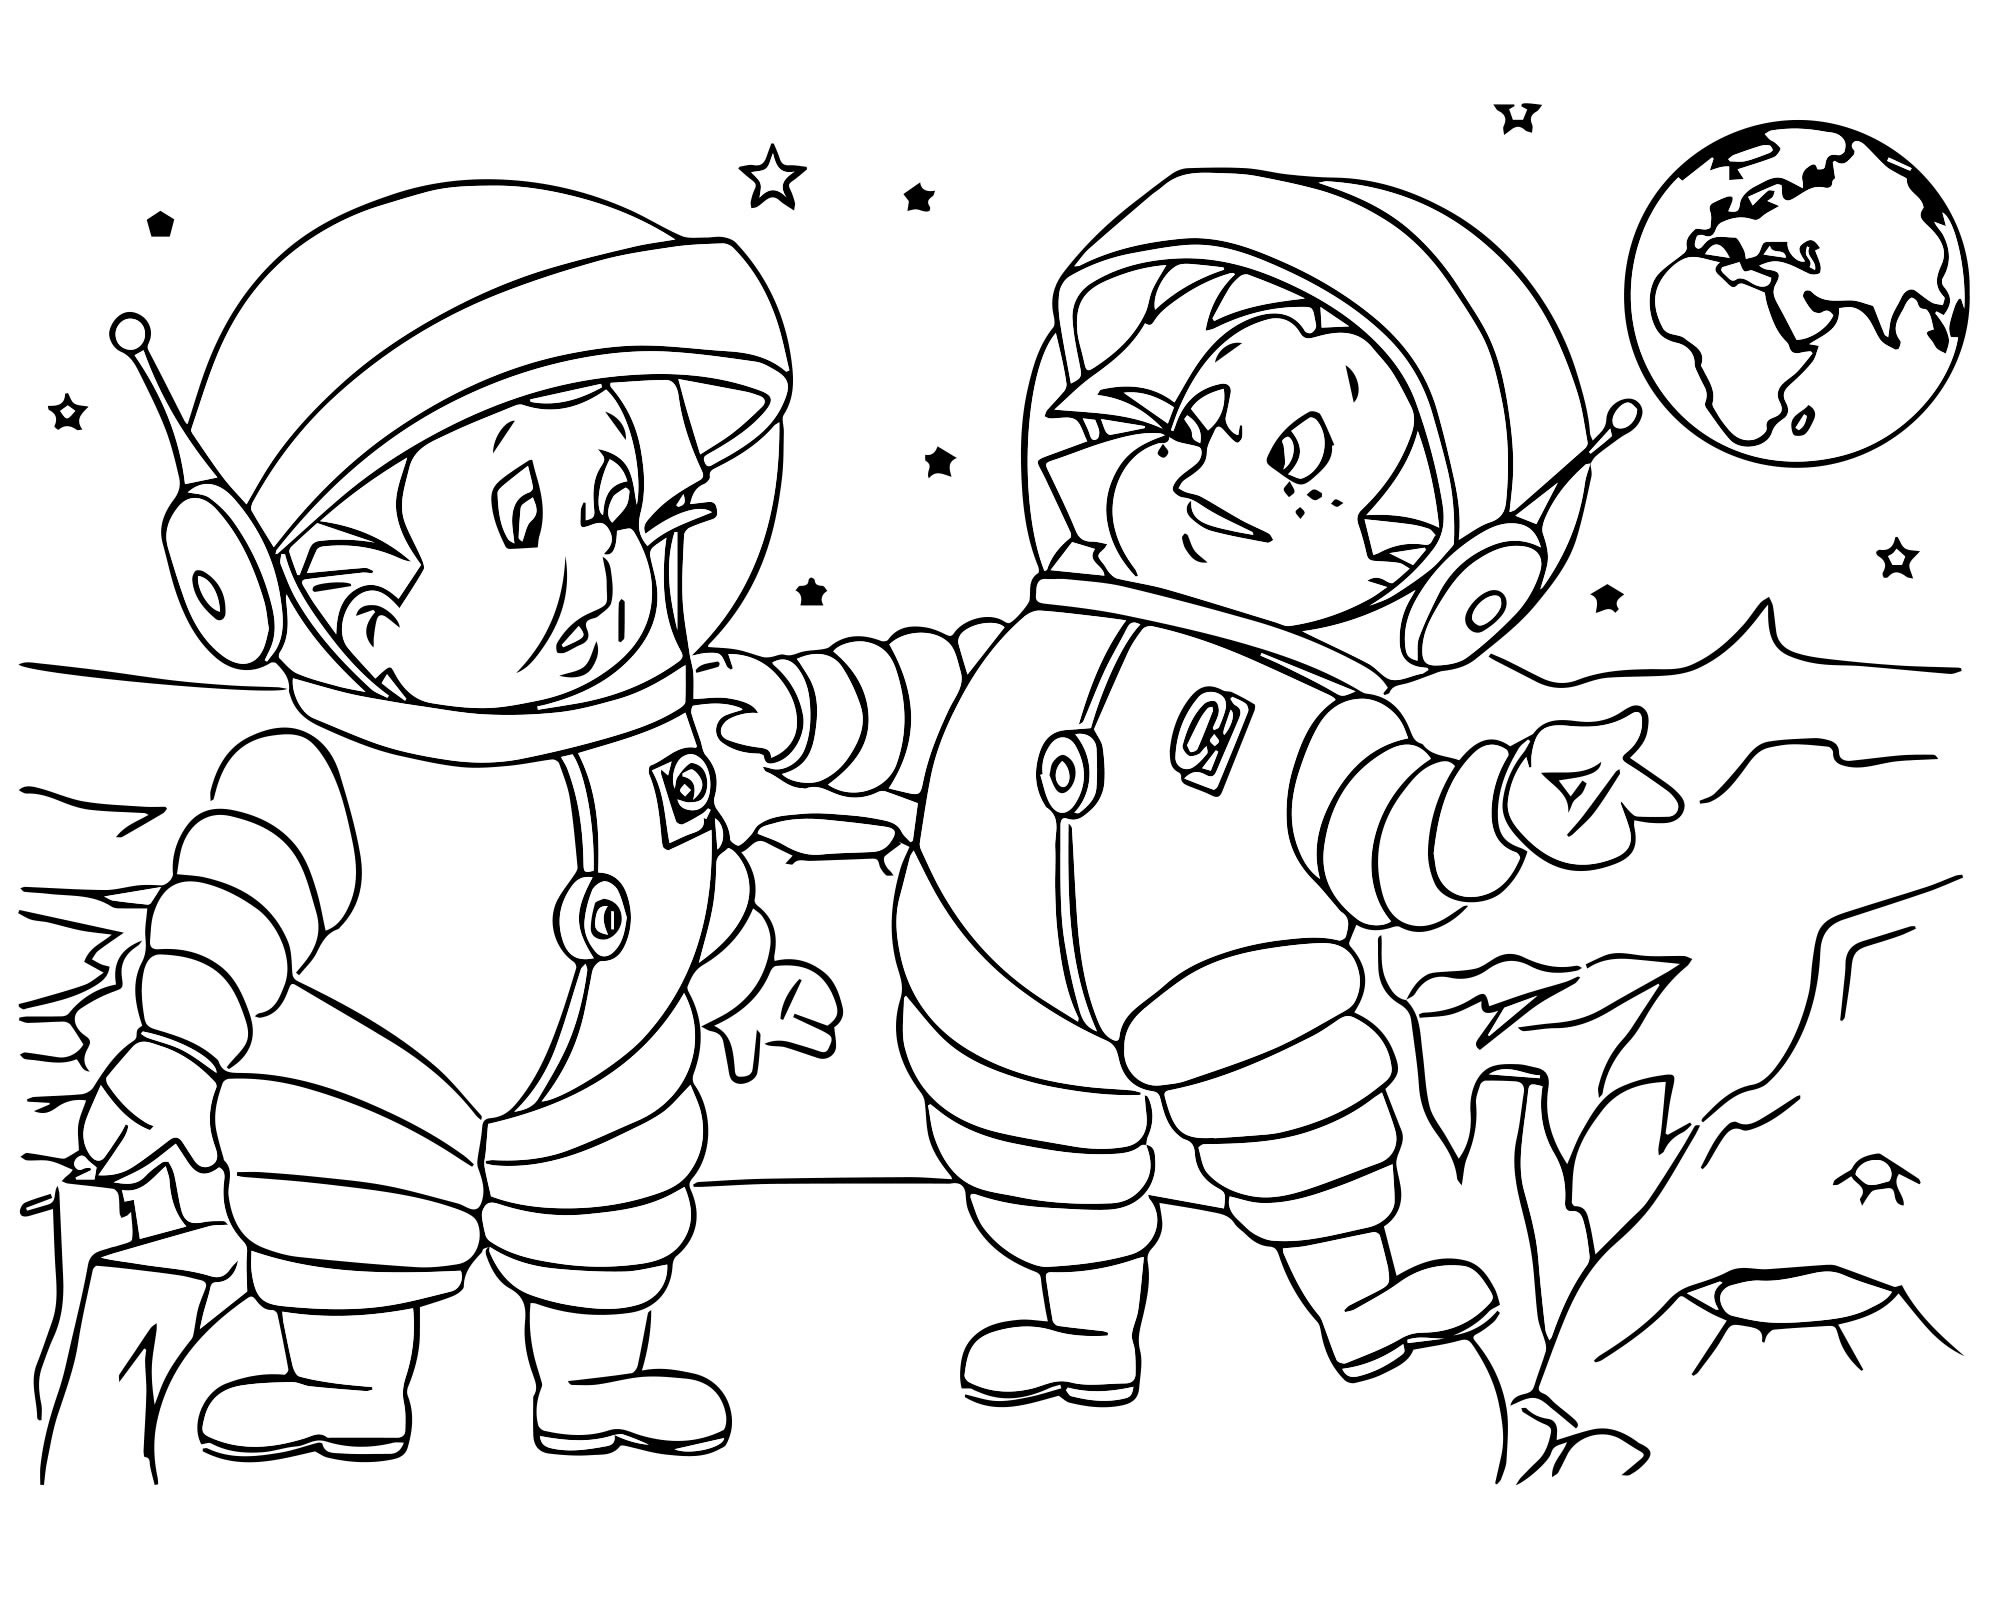 Рисунок на день космонавтики раскраска. Незнайка на Луне раскраска для детей. Раскраска. В космосе. Космос раскраска для детей. Раскраска день космонавтики для детей.